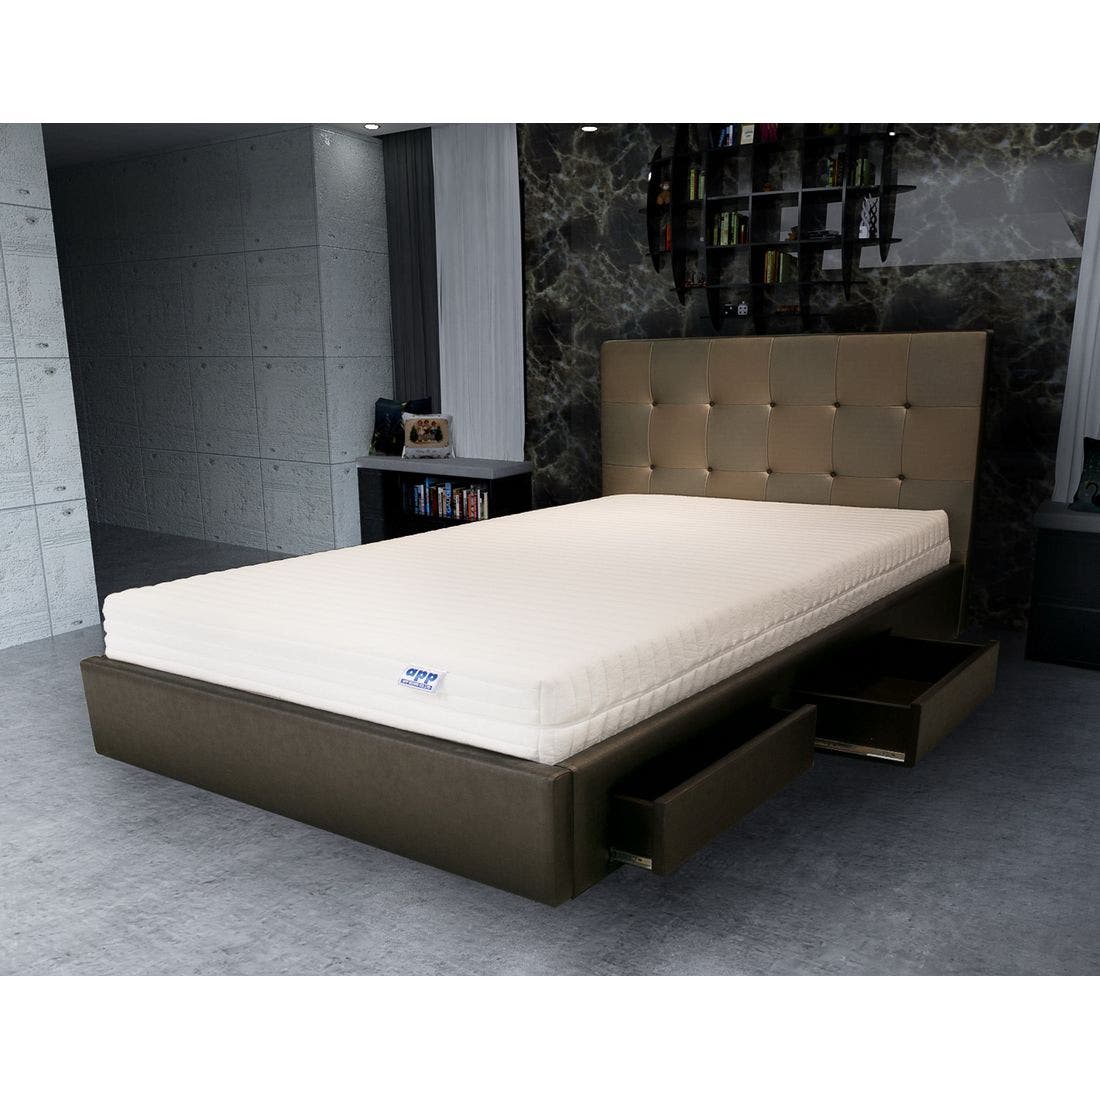 39001670-mattress-bedding-mattresses-latex-mattresses-31